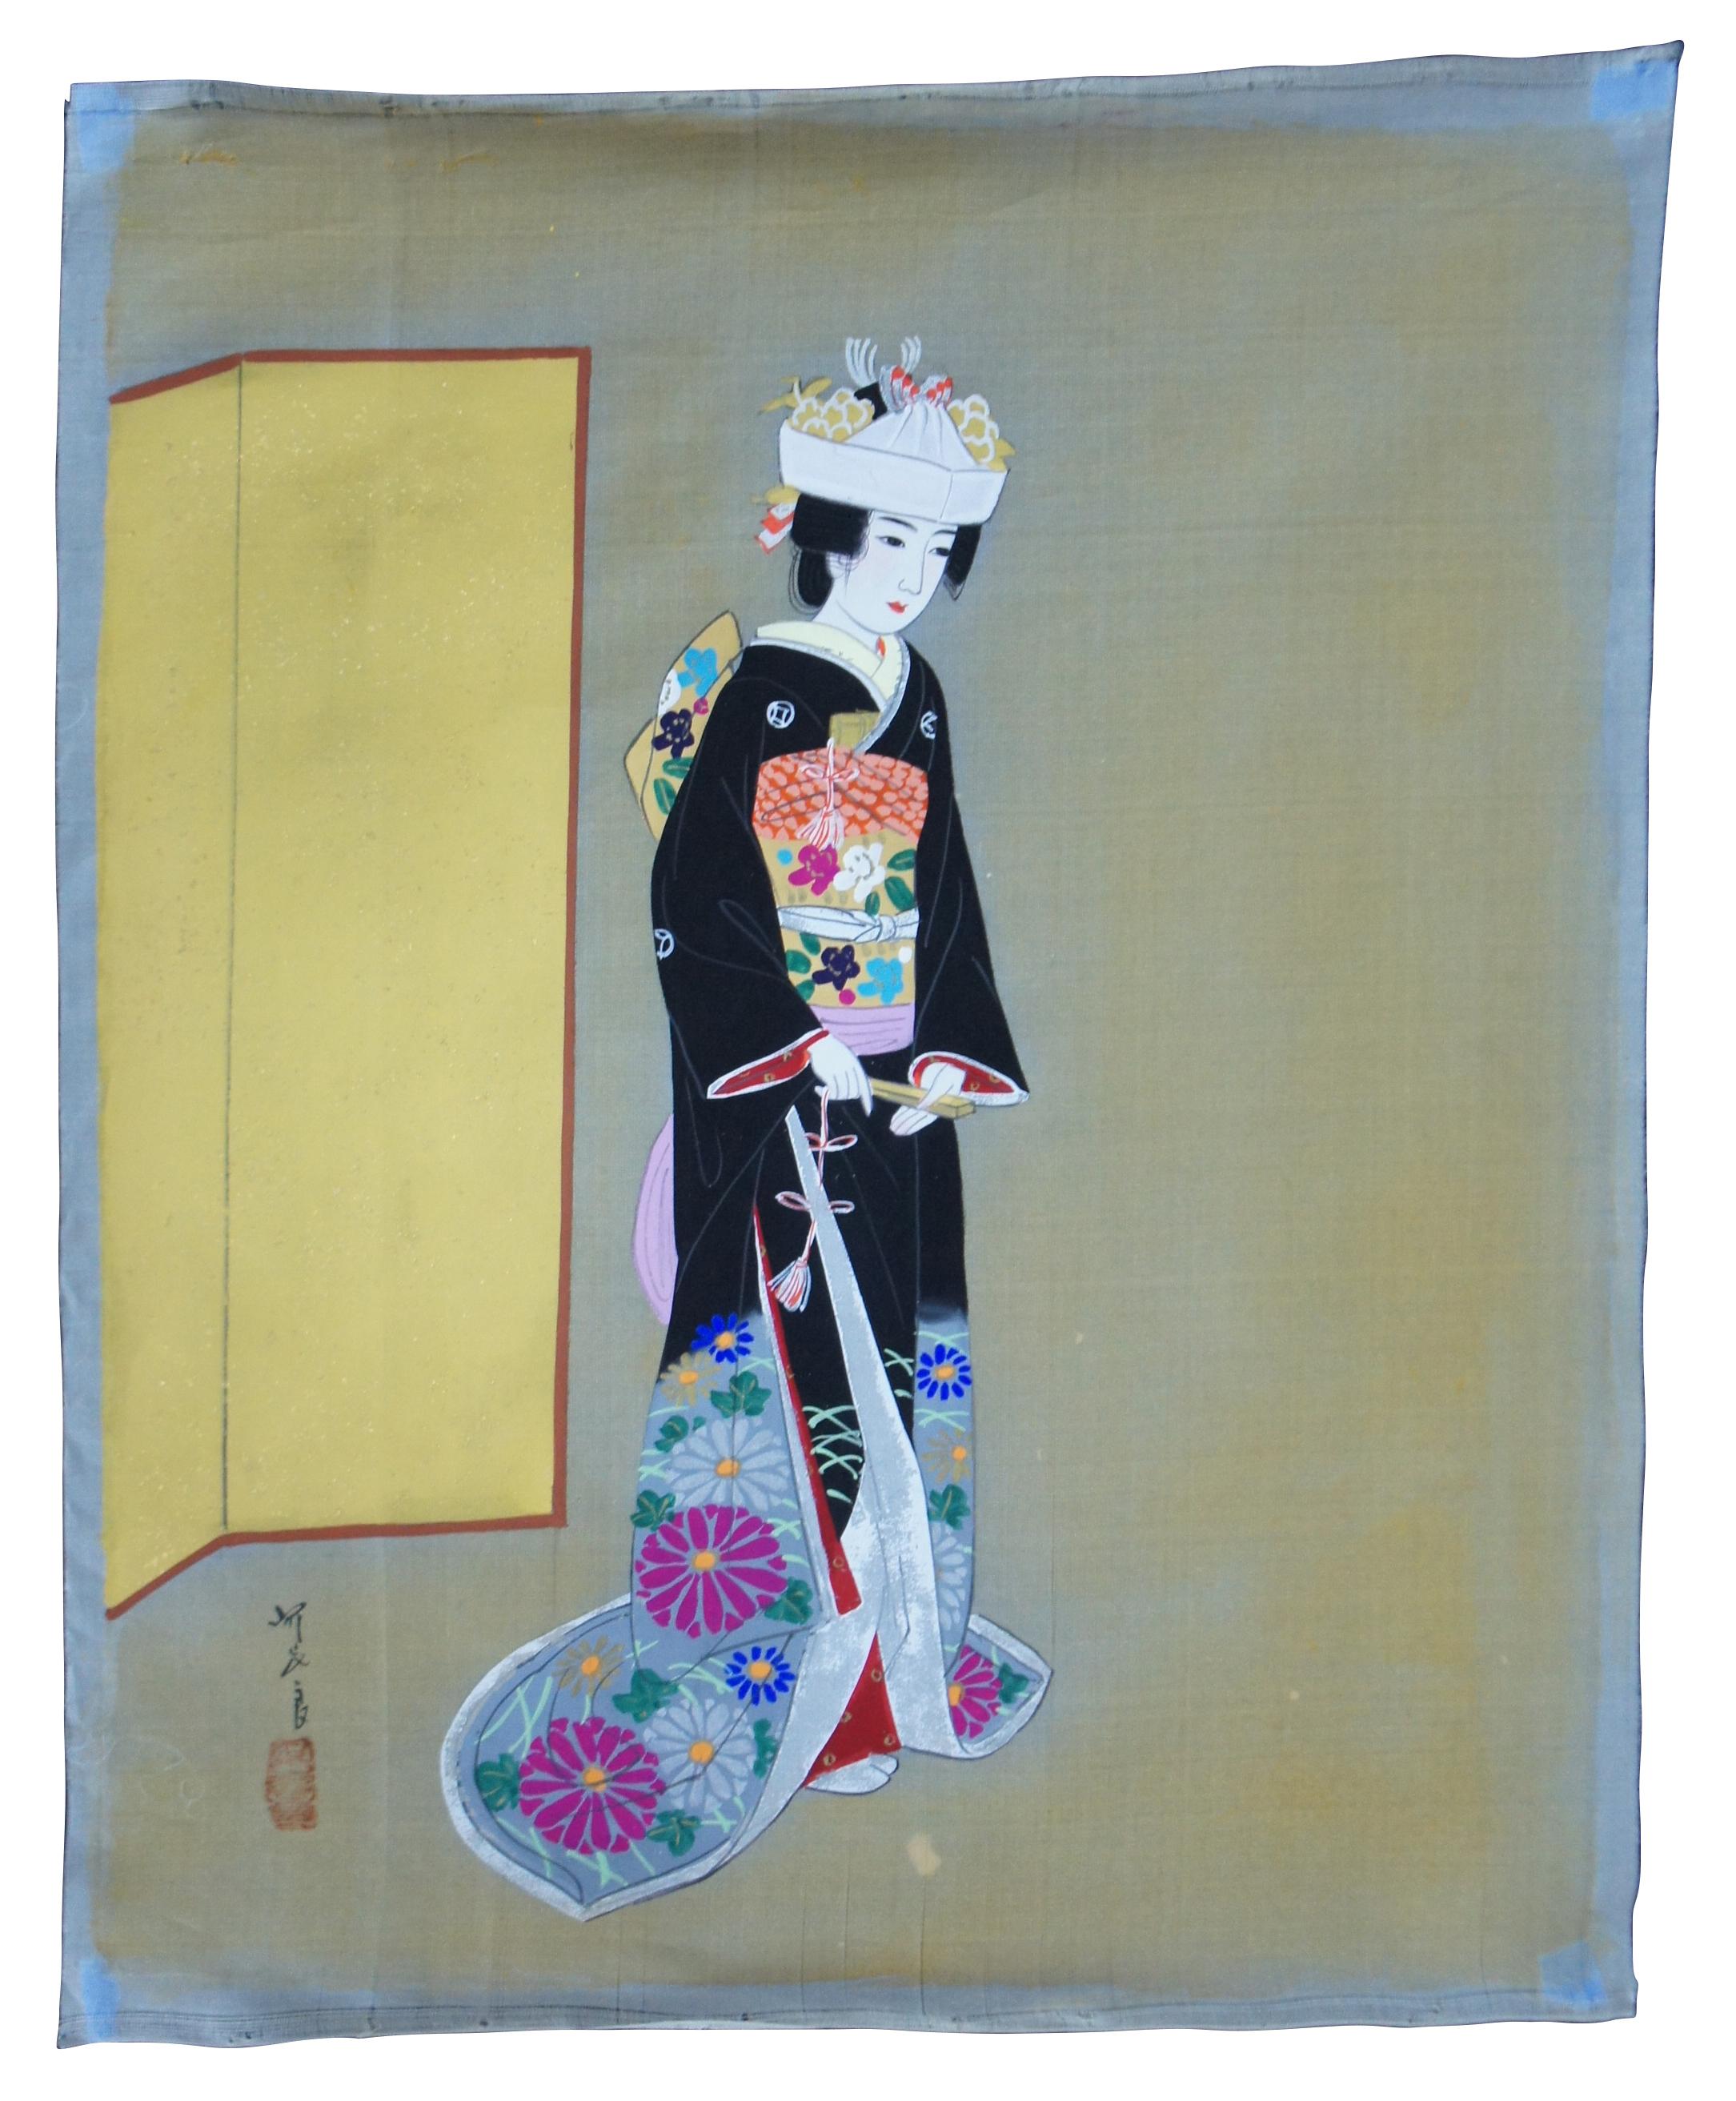 Lot von vier Vintage ungerahmt japanische Gemälde auf Seide, darunter eine weibliche Figur oder Geisha und drei Wasser und Berglandschaften mit Dschunken / Segelboot / Fischerboote. Inklusive Aufbewahrungsrohr.
  